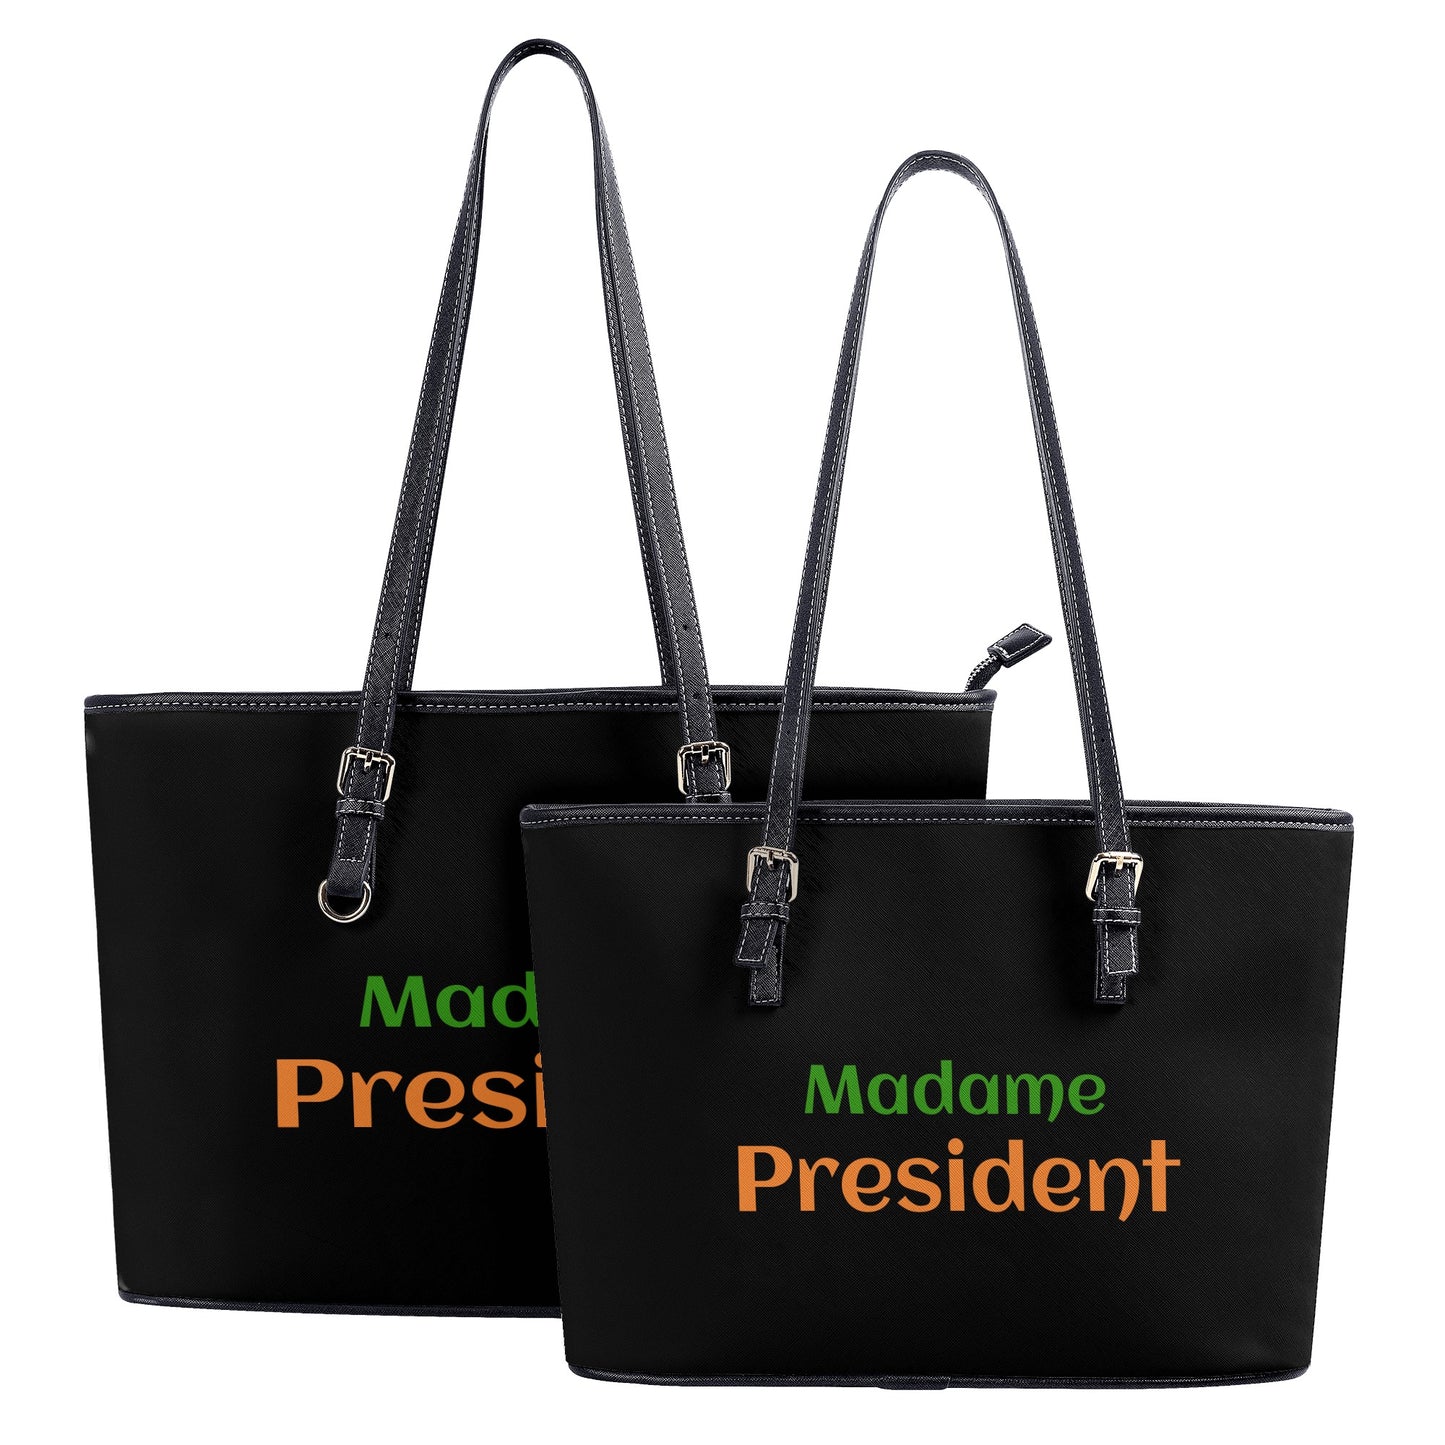 Madam President Fashion PU Tote Bags